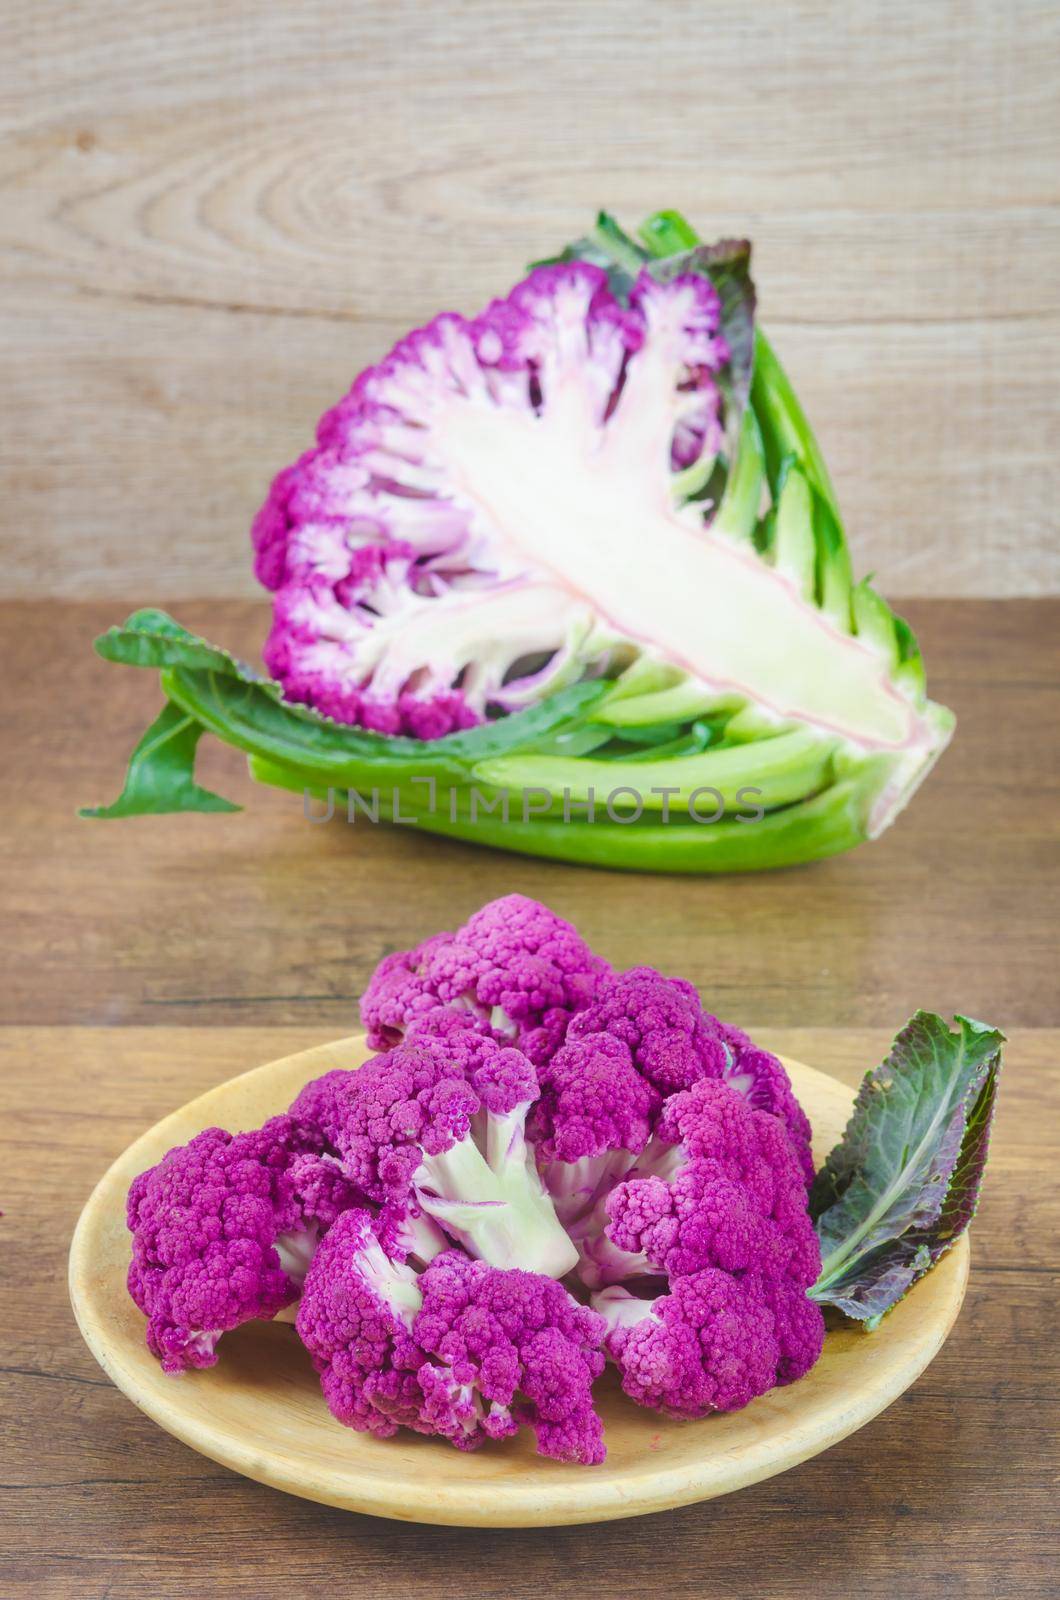 Freshness Purple Cauliflower on wooden background. by Gamjai